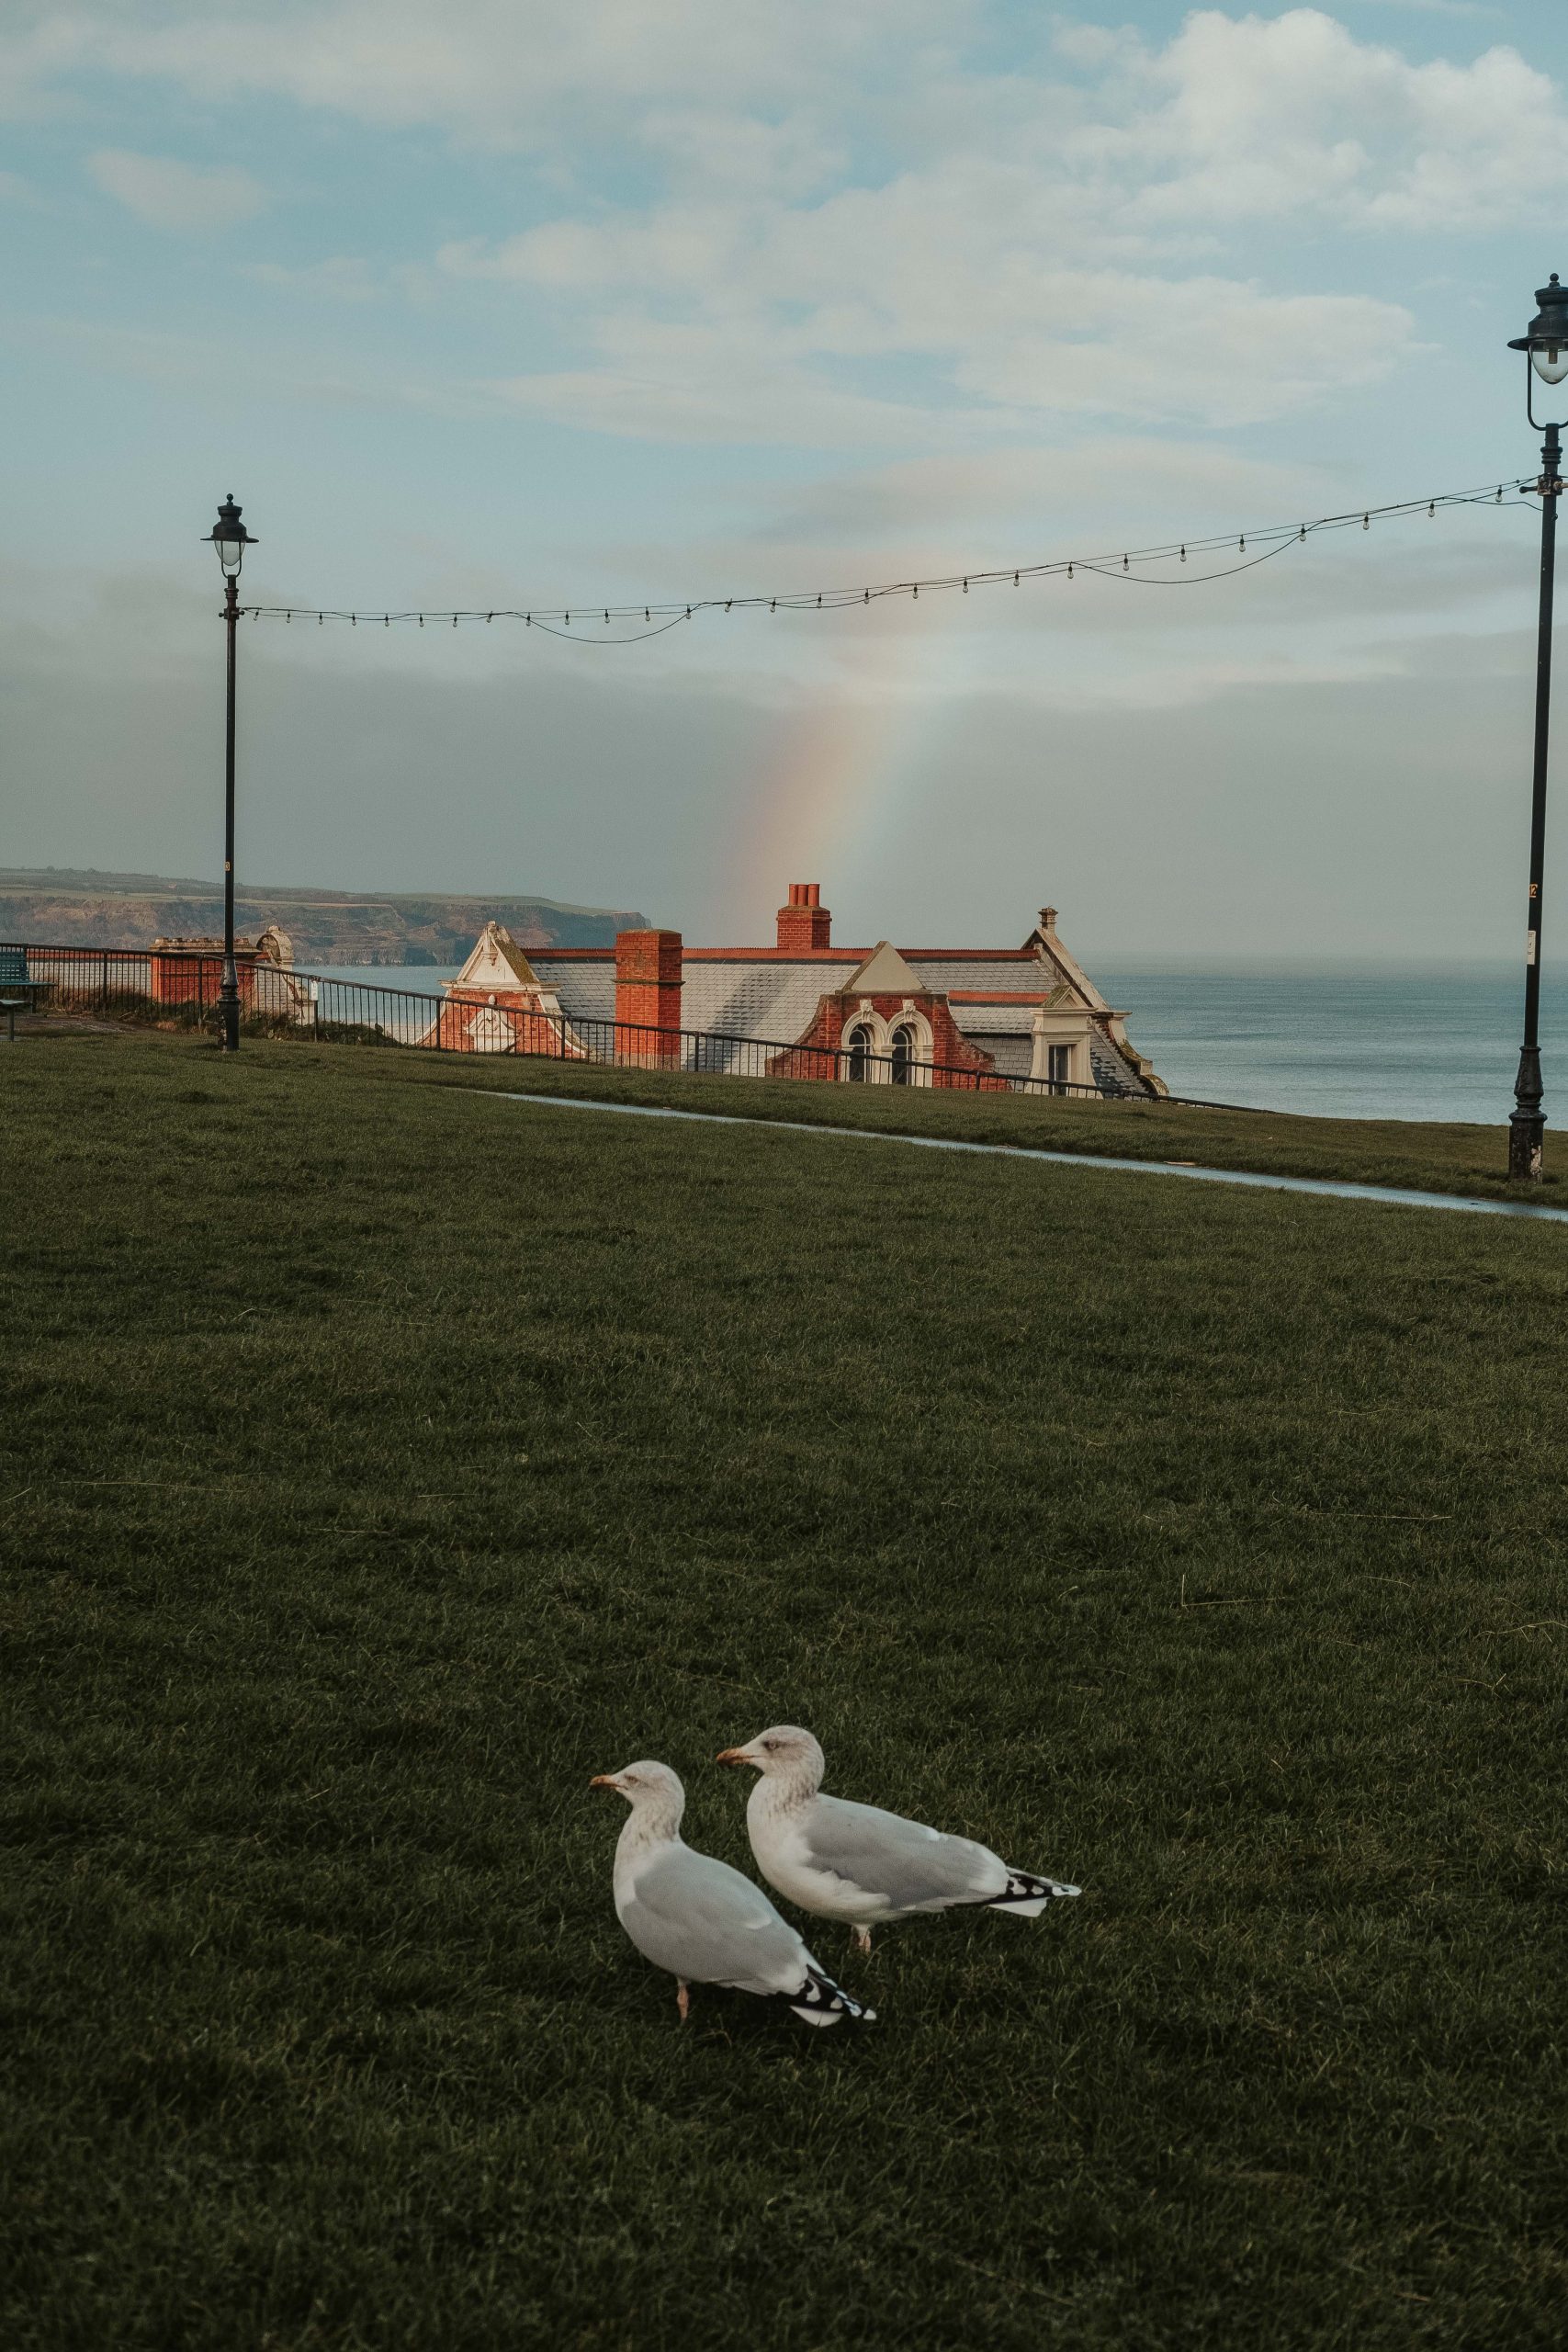 Yorkshire coast with a rainbow